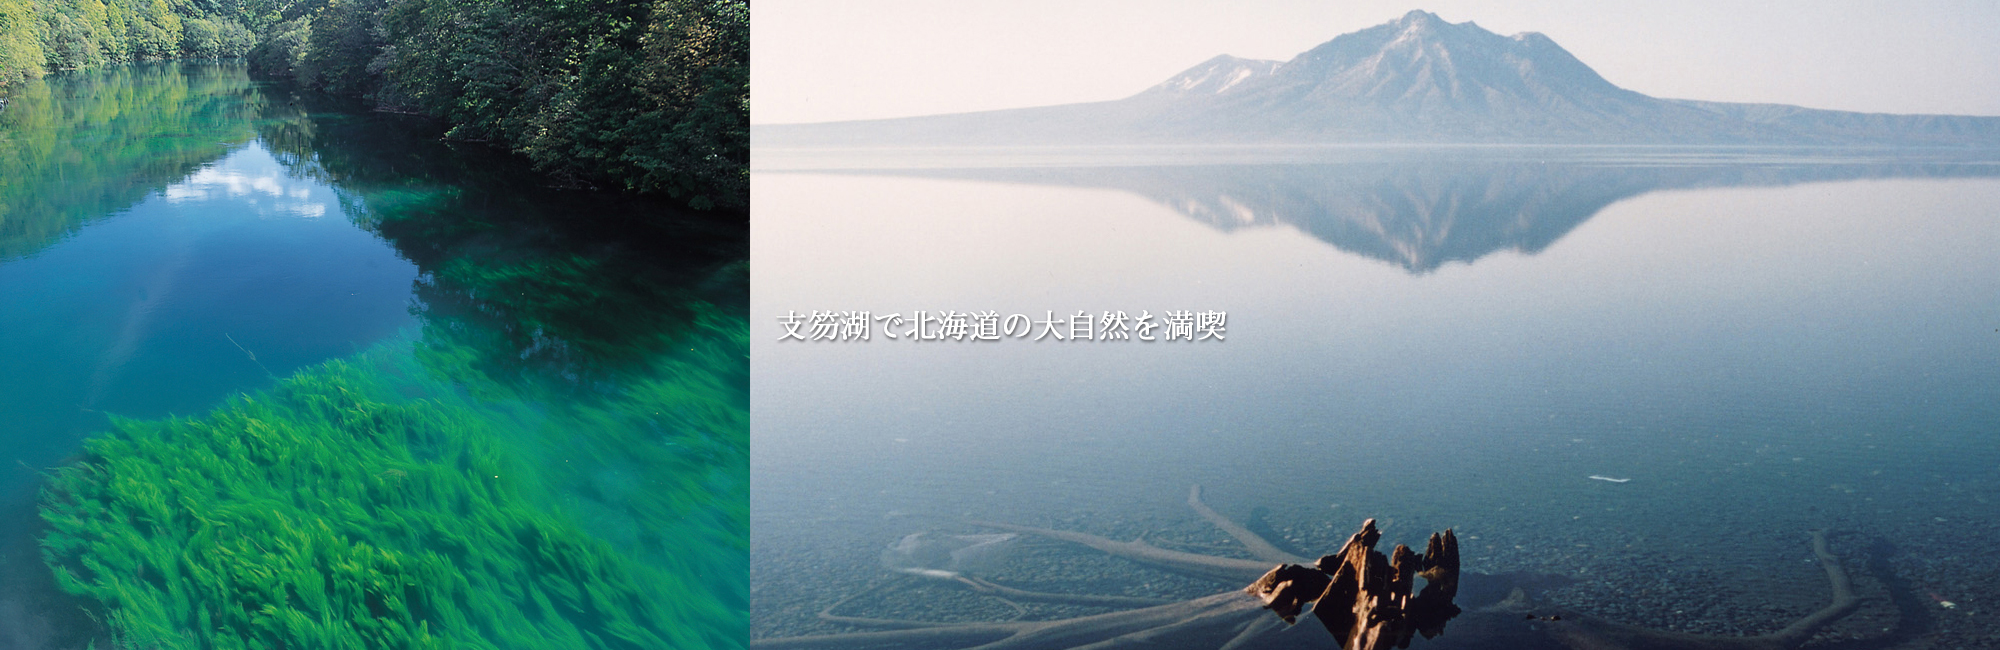 支笏湖で北海道の大自然を満喫